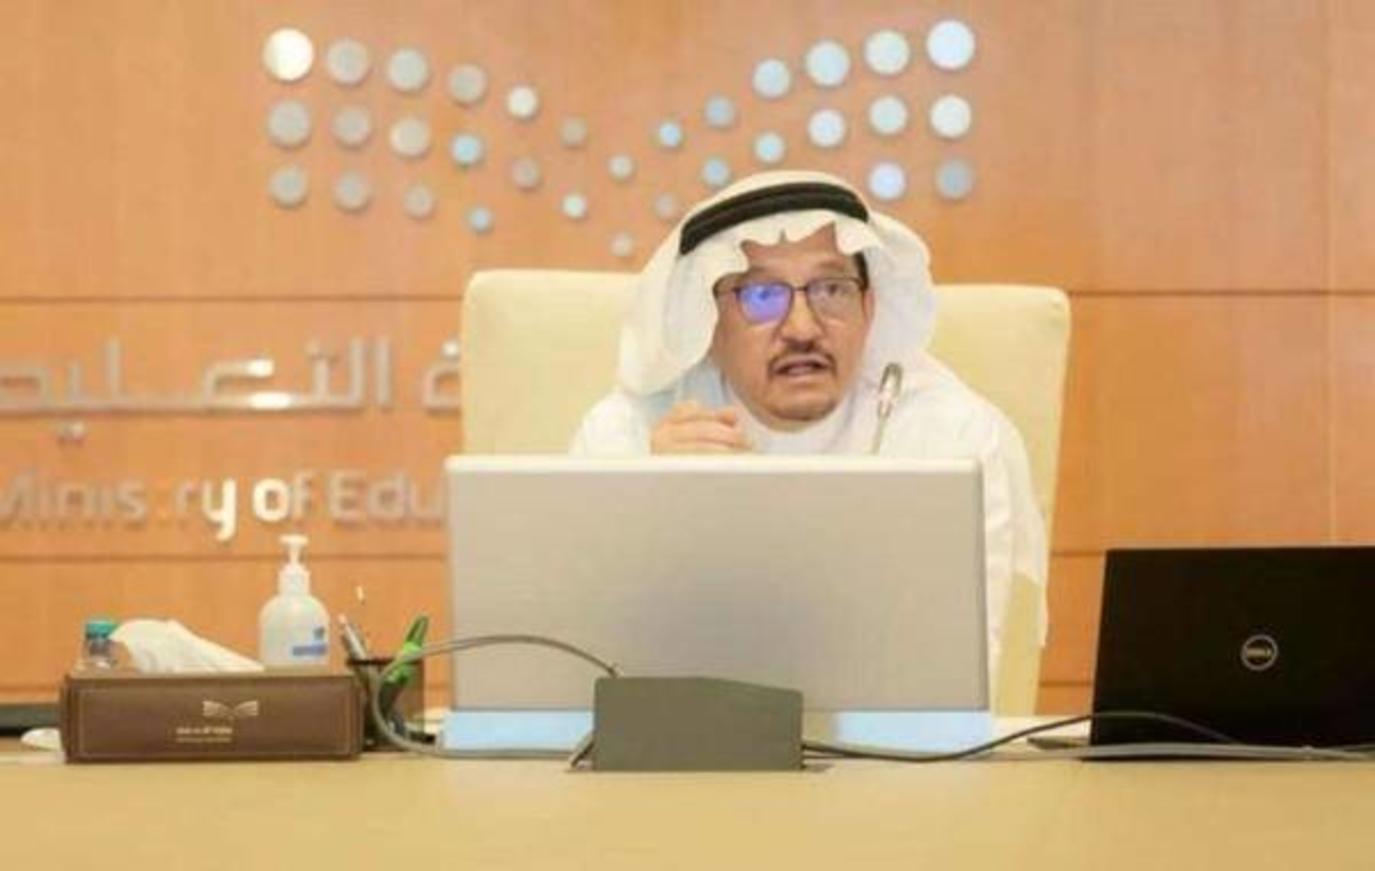 ايقاف الدارسة في السعودية بسبب اوميكرون بقرار من وزارة التعليم حقيقة ام لا "التفاصيل كاملة"